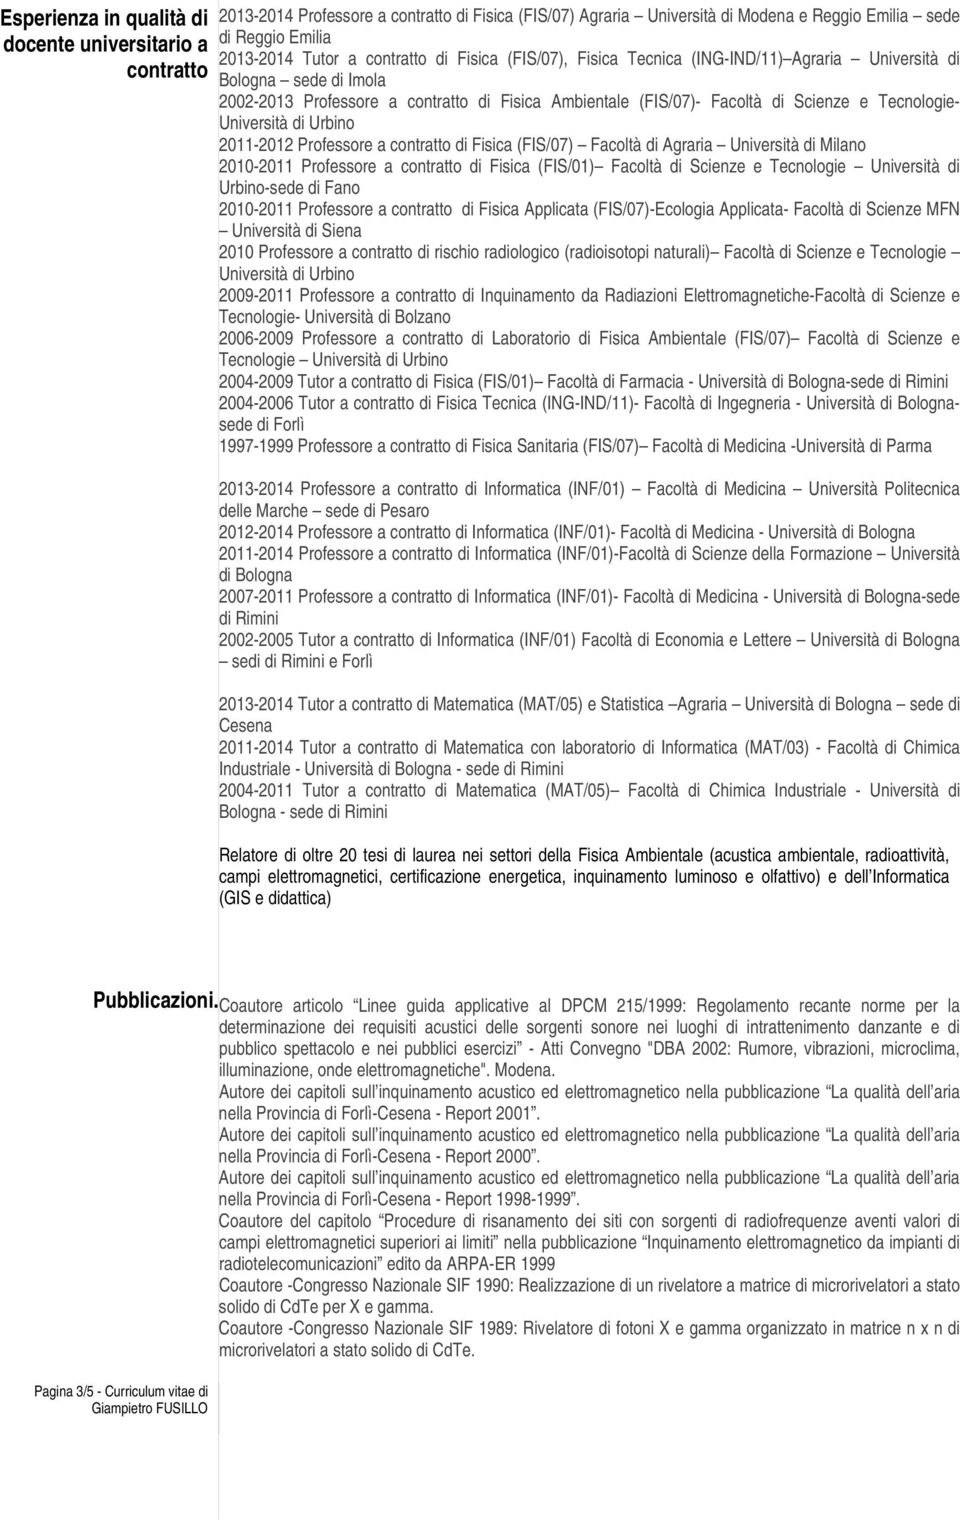 Università di Urbino 2011-2012 Professore a contratto di Fisica (FIS/07) Facoltà di Agraria Università di Milano 2010-2011 Professore a contratto di Fisica (FIS/01) Facoltà di Scienze e Tecnologie